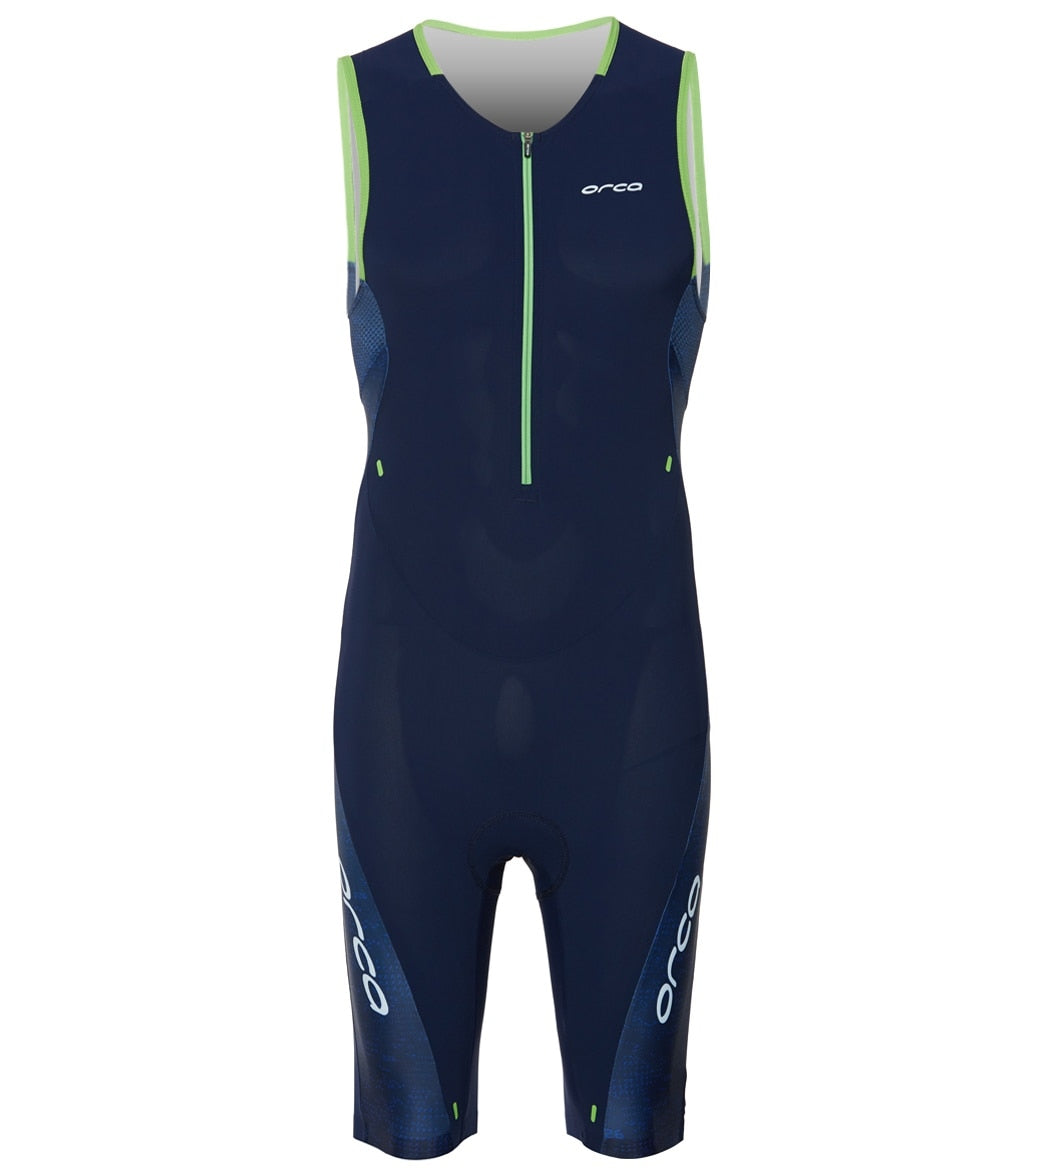 Orca Men's 226 Race Suit - Navy/Green Xxl - Swimoutlet.com